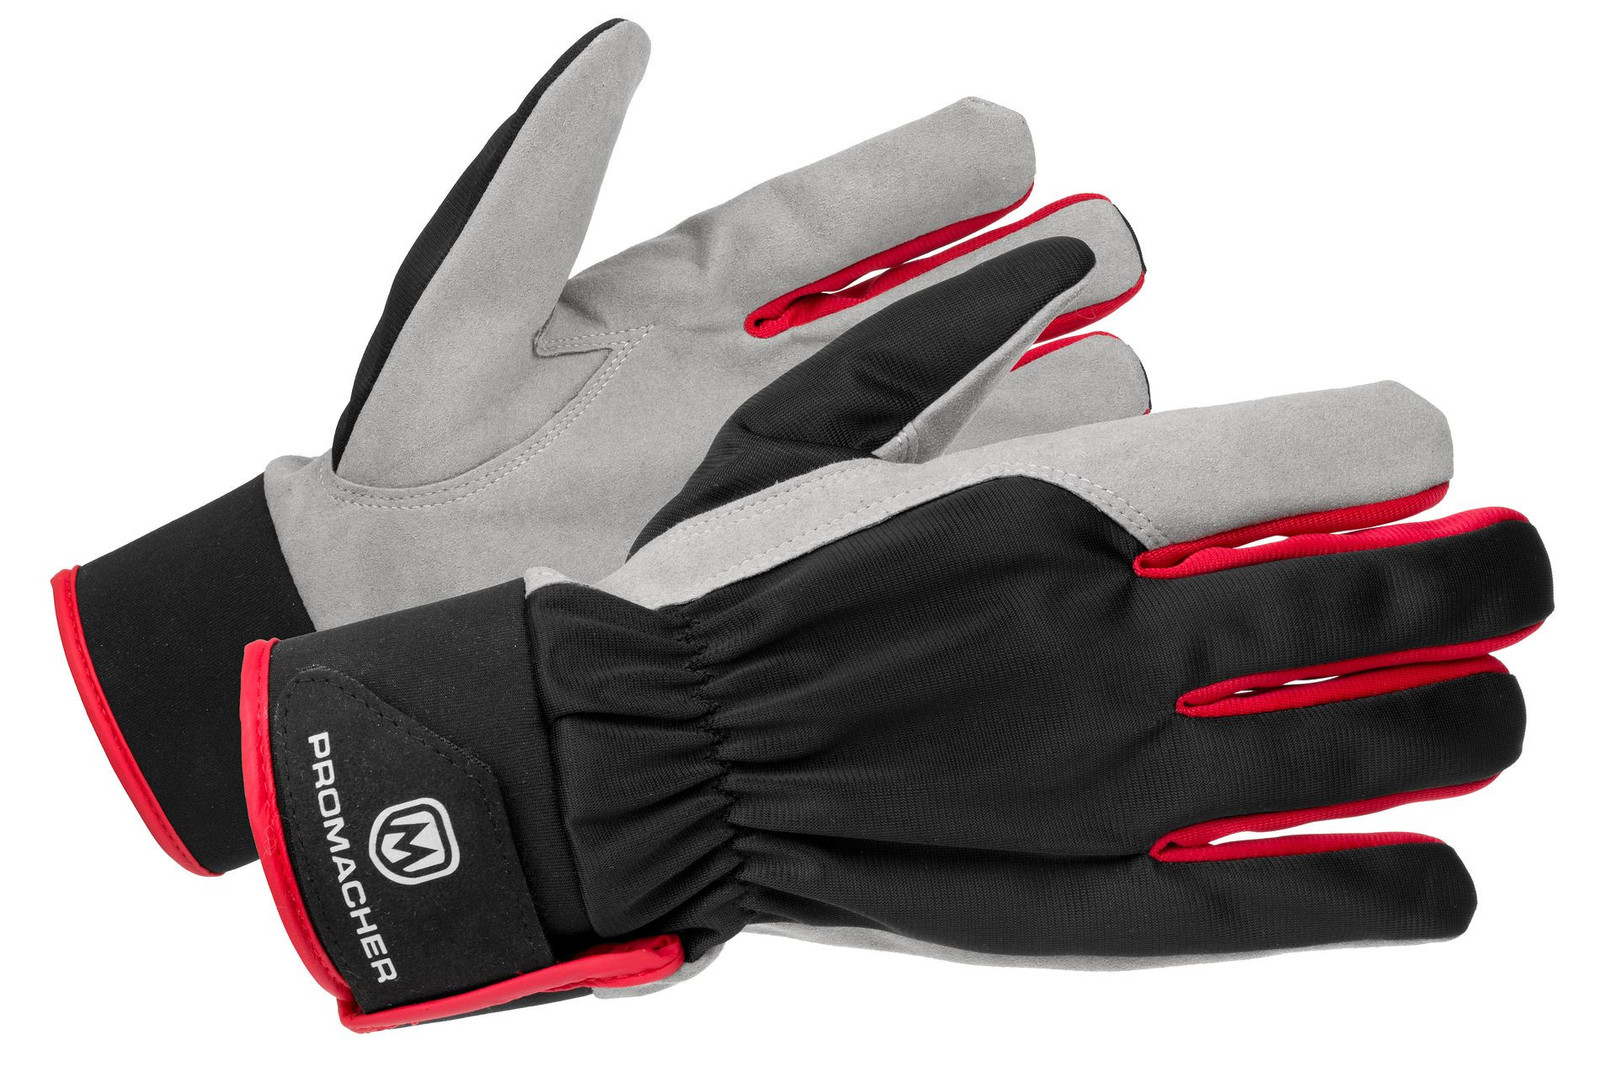 Pracovné rukavice Promacher Carpos Velcro kombinované - veľkosť: 9/L, farba: sivá/červená